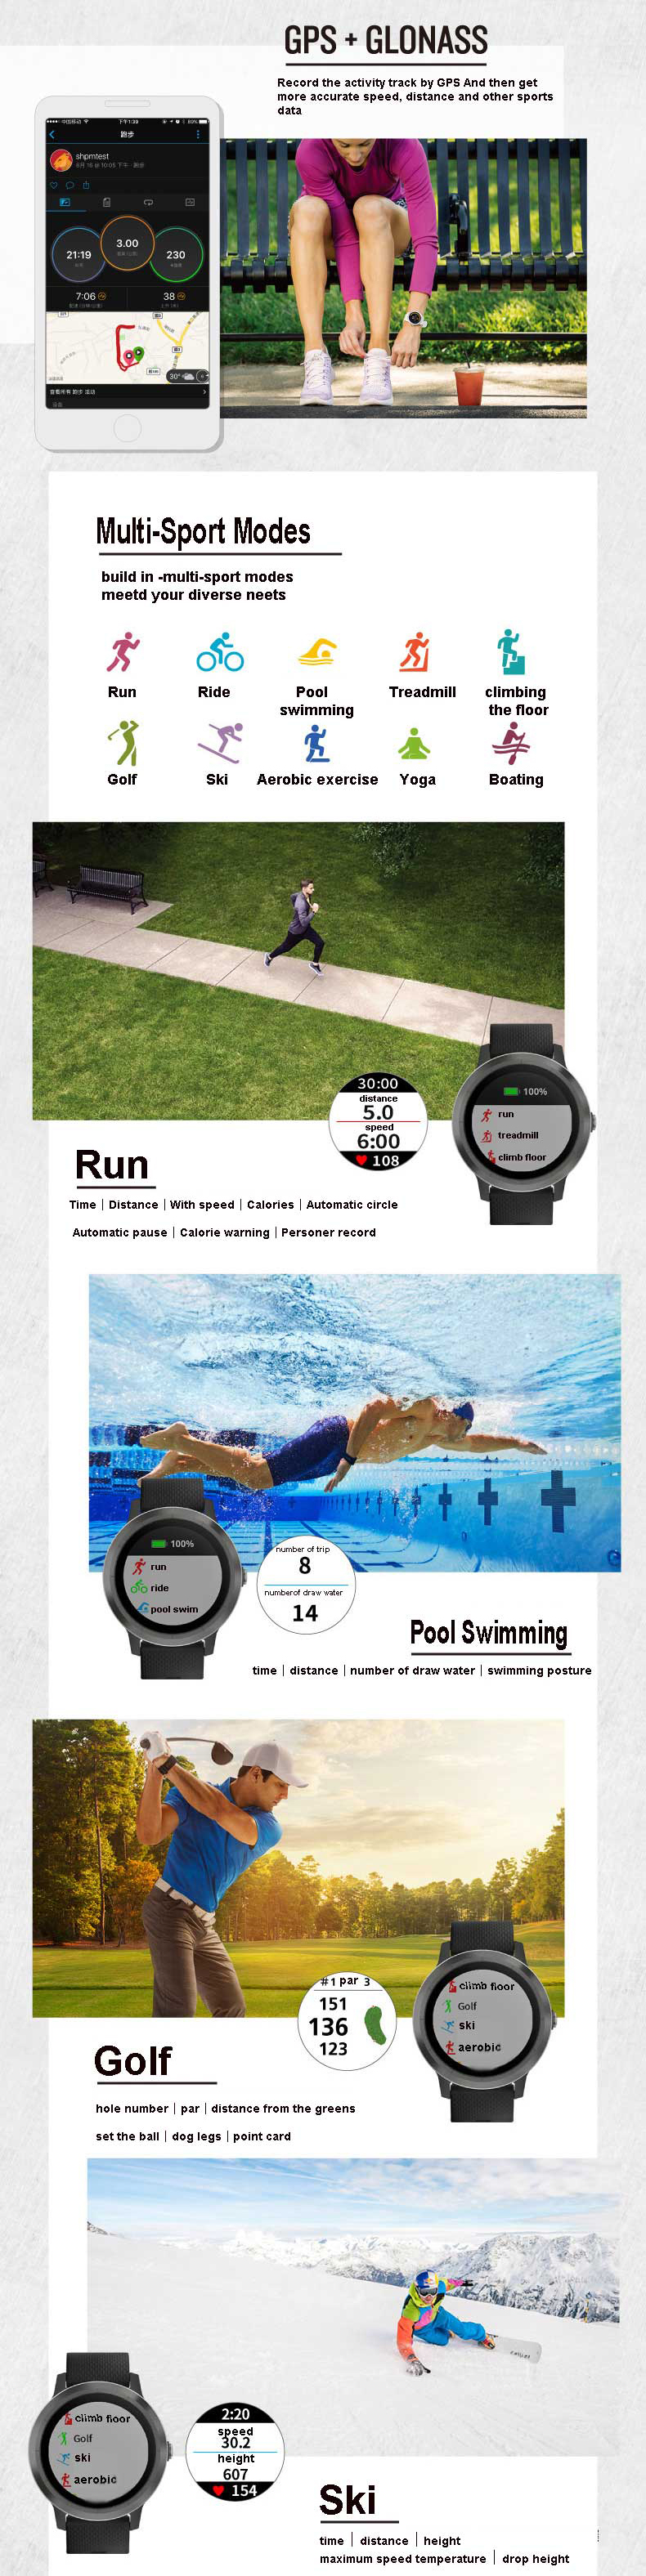 Garmin Vivoactive3 1.2Inch Touch Screen GPS+GLONASS Muti-sport Modes NFC Heart Rate Smart Watch 11